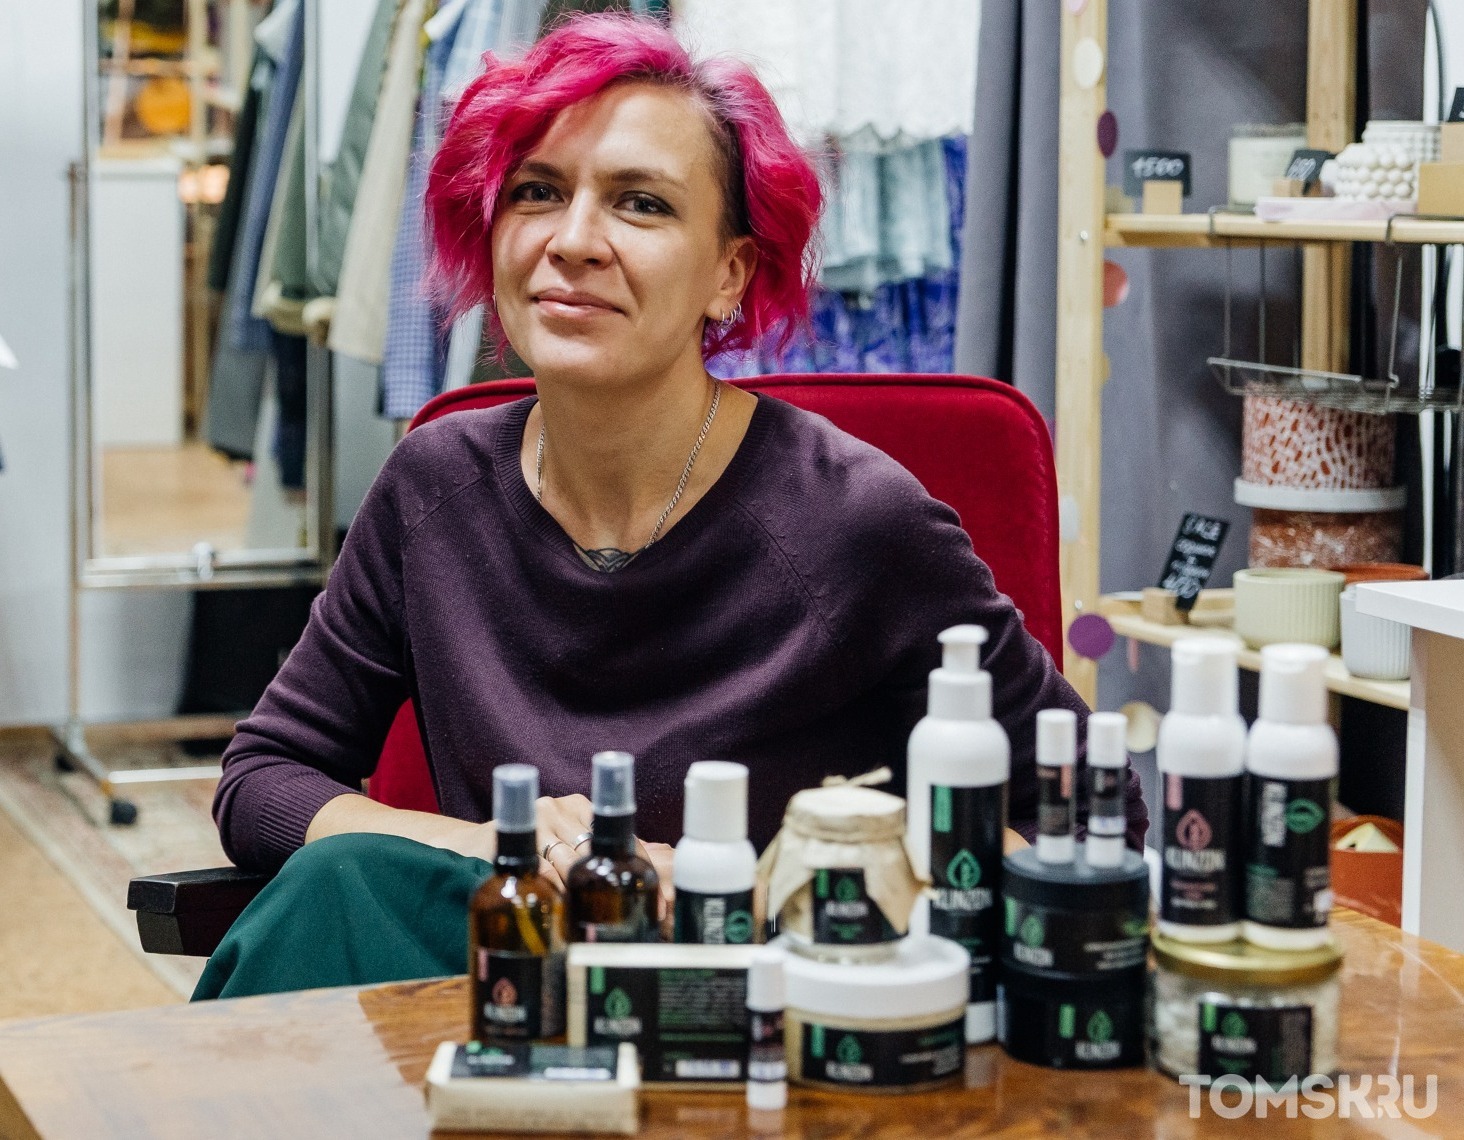 Красота без вреда для природы: создательница томского «зеленого» бренда Klinzon об этичной косметике